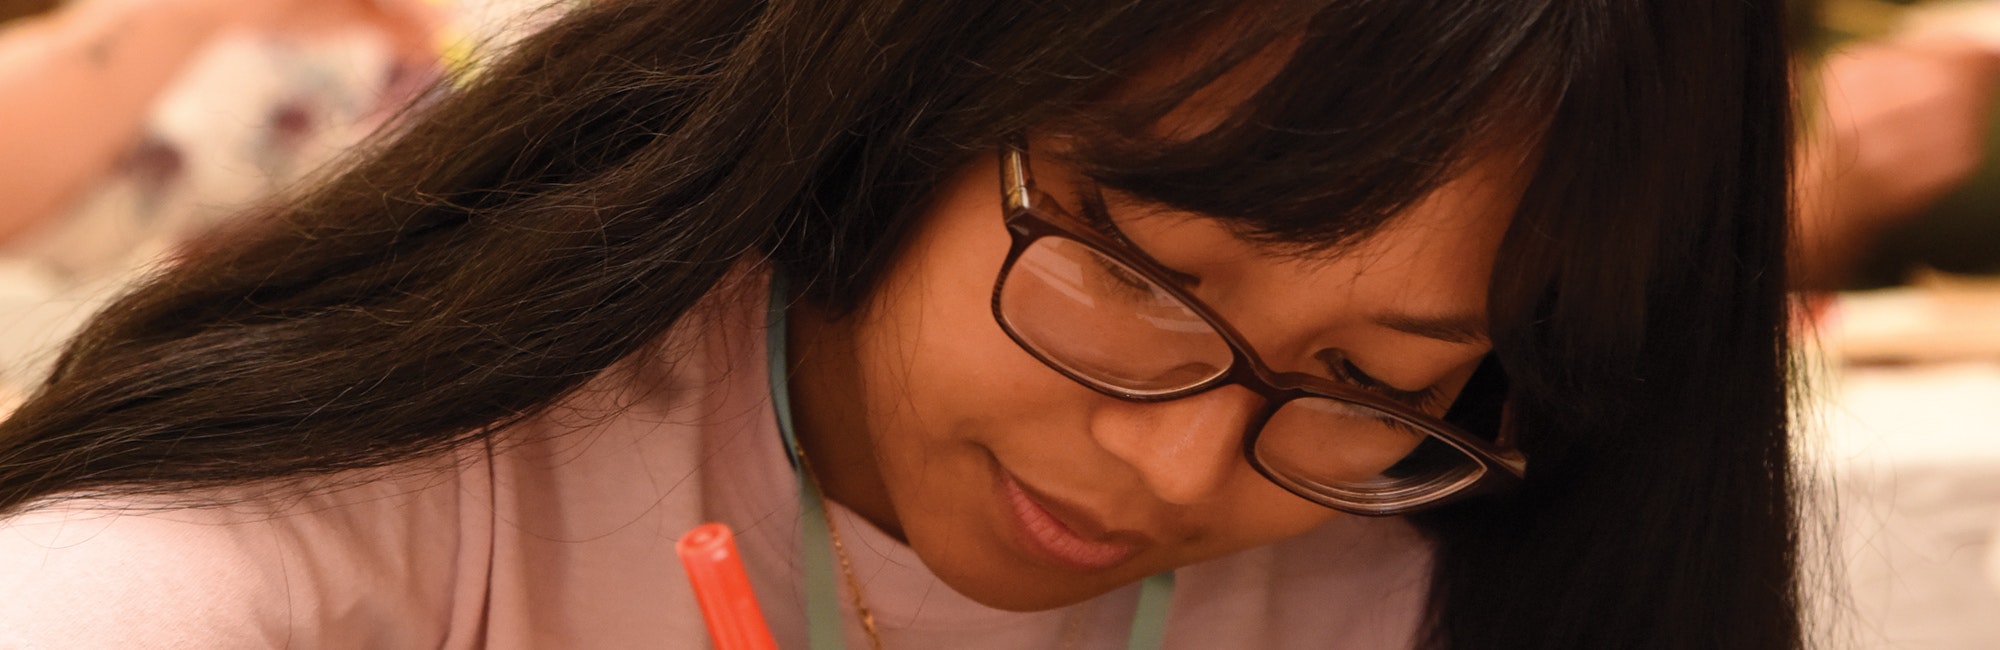 （被裁切的近距离照片）一名亚洲女孩戴着眼镜向下看，手里握着一支笔